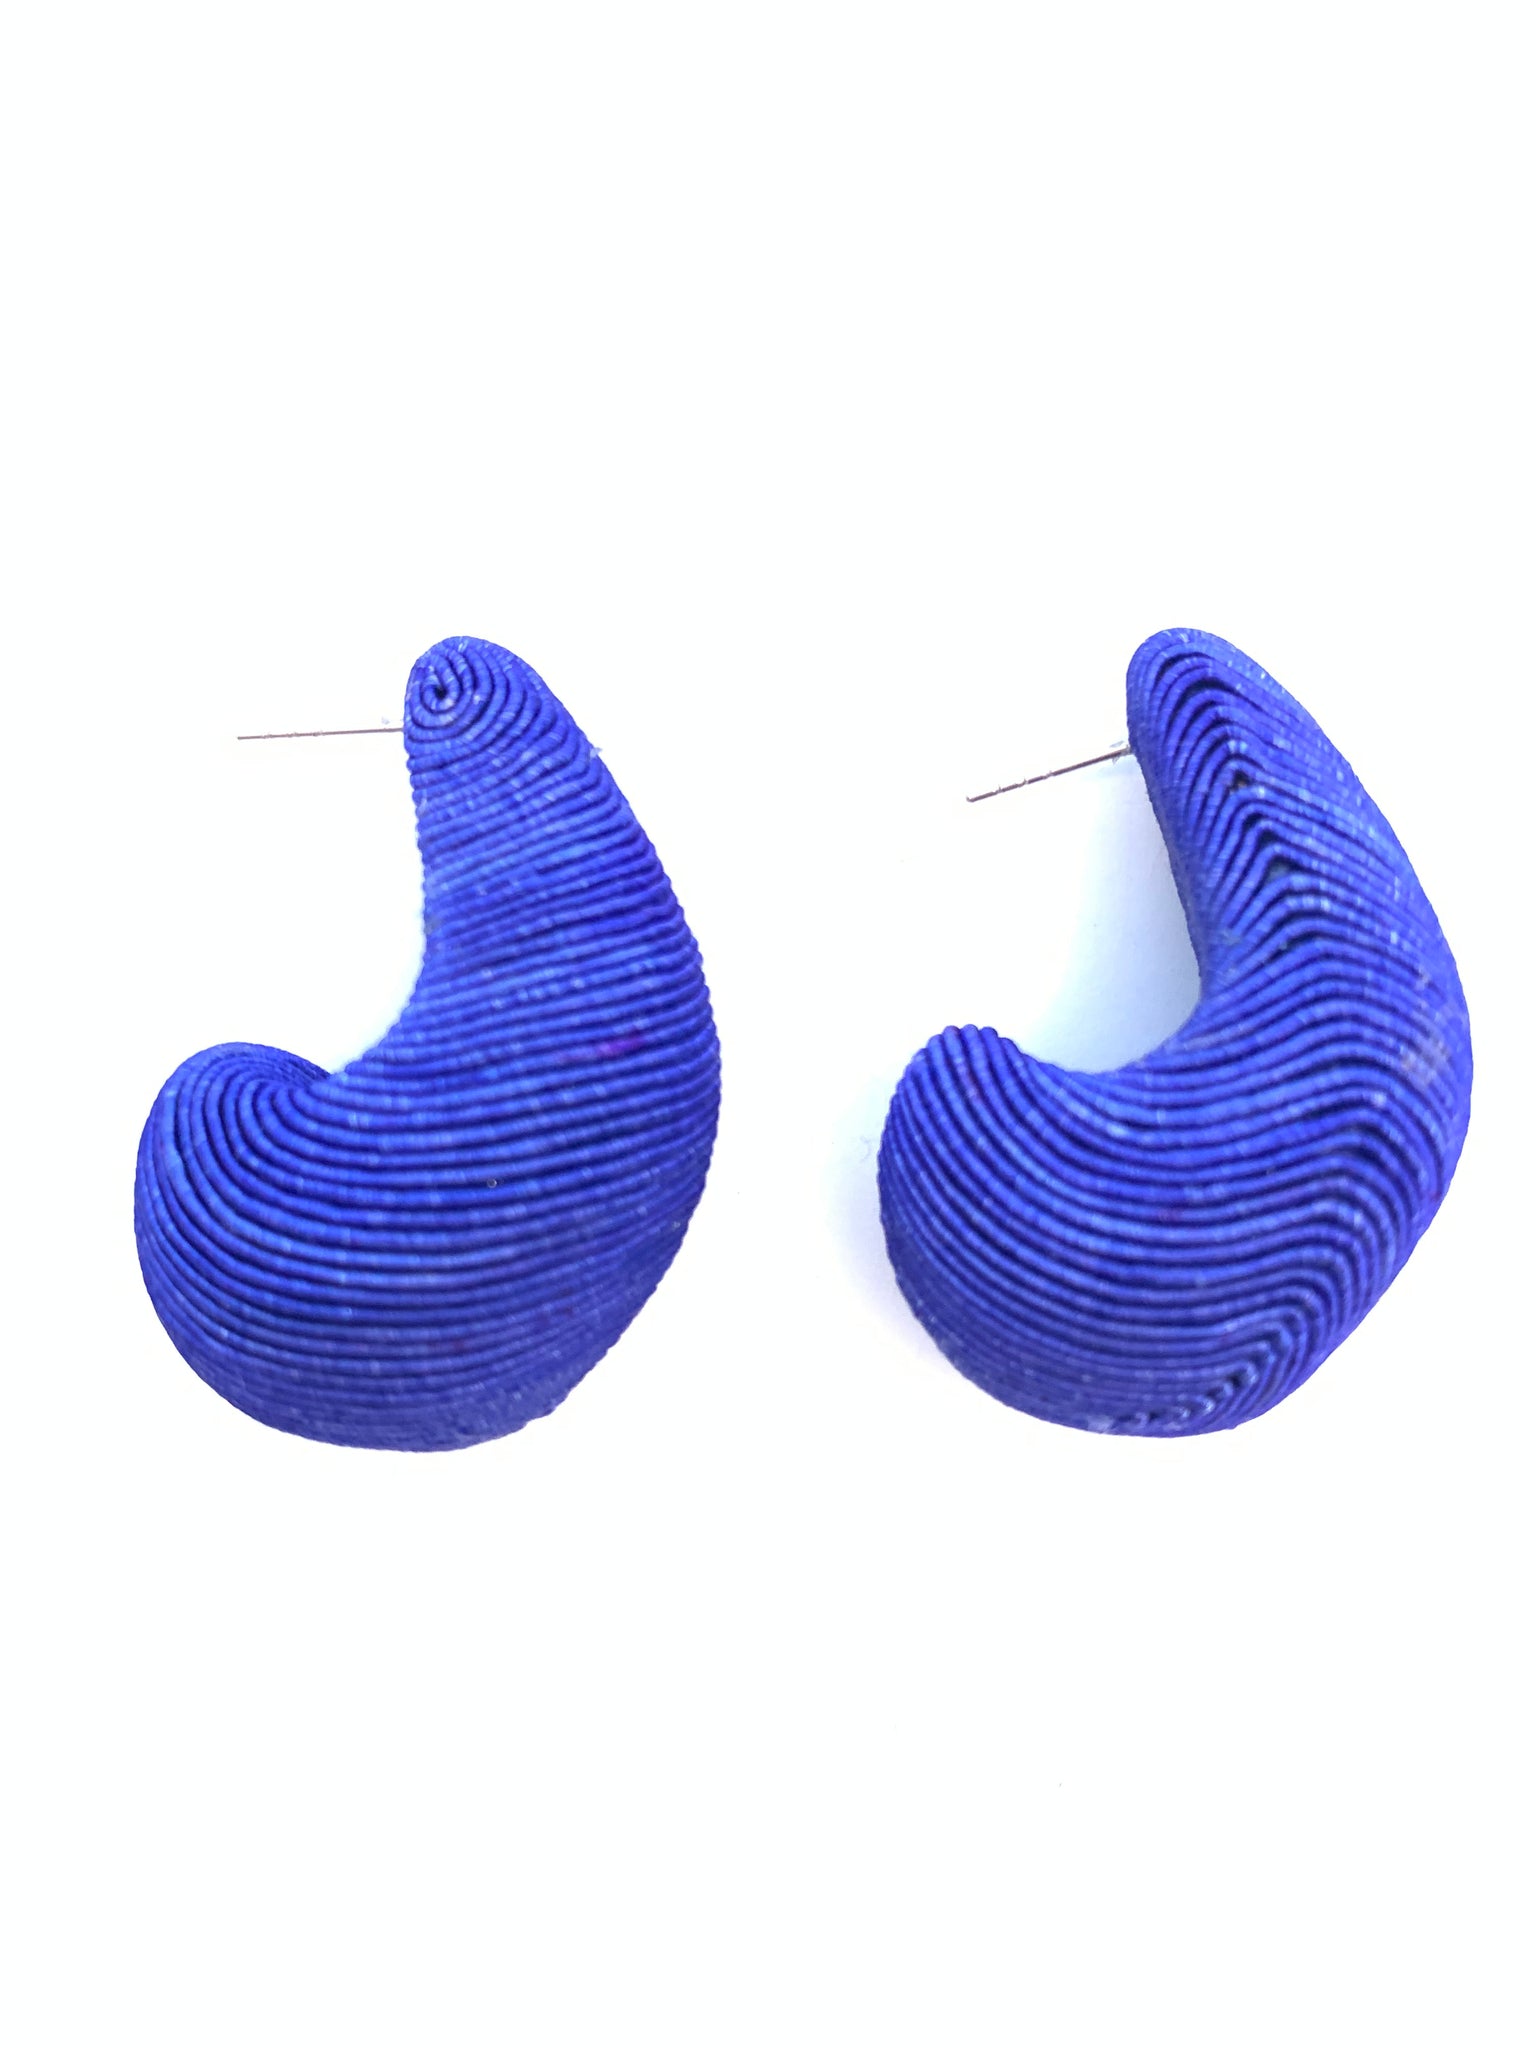 Cord Wrapped Teardrop Earring - Royal Blue